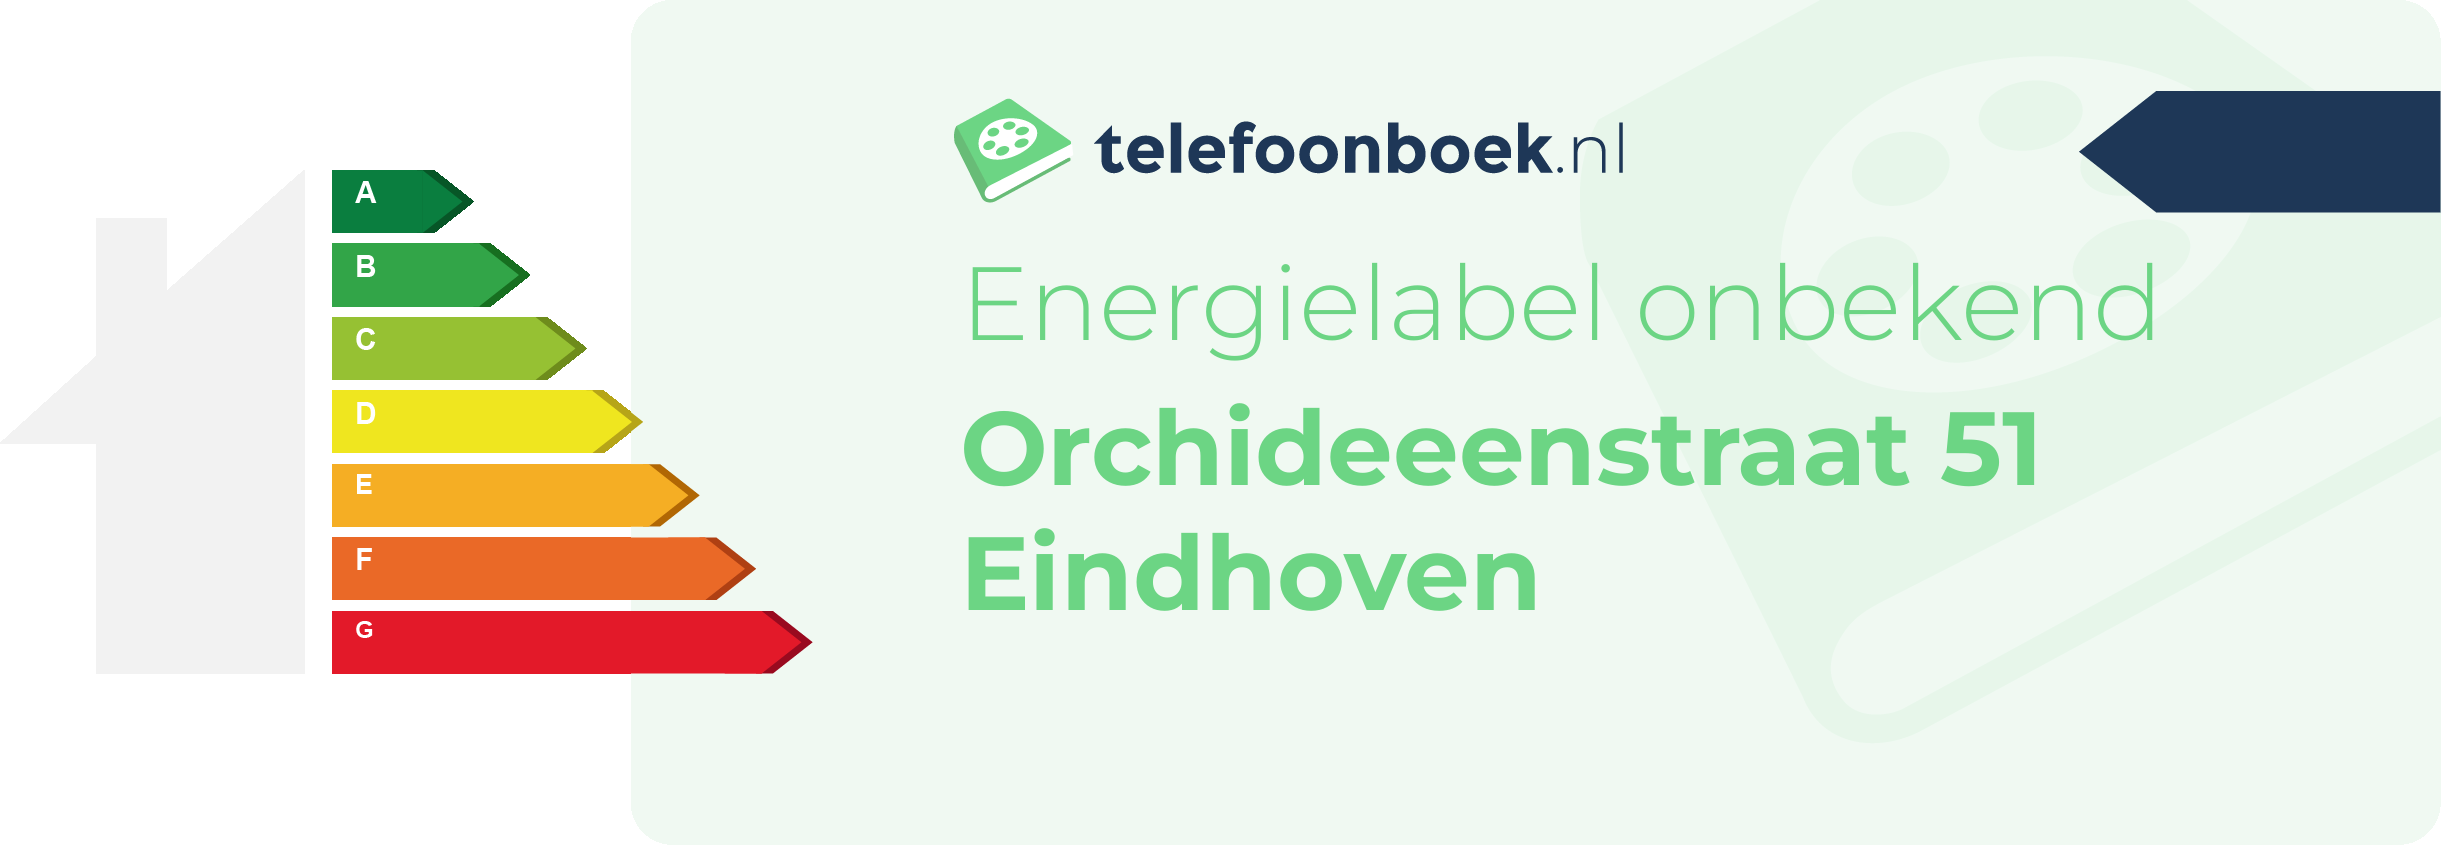 Energielabel Orchideeenstraat 51 Eindhoven